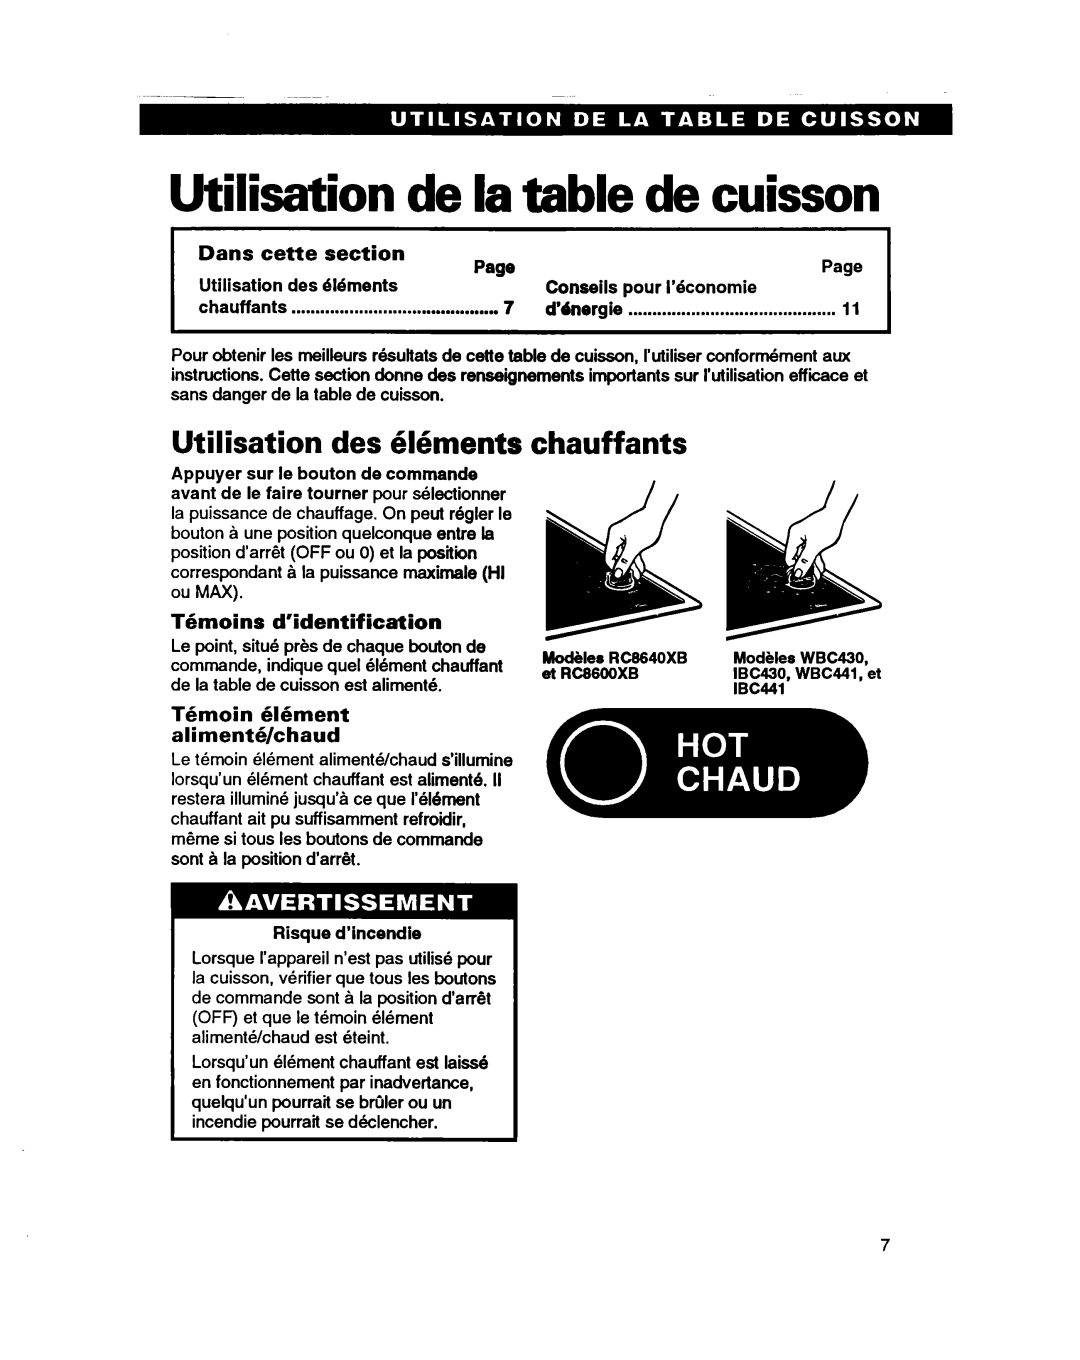 Whirlpool RC864OXB important safety instructions Utilisation de la table de cuisson, Utilisation des 6Ements chauffants 